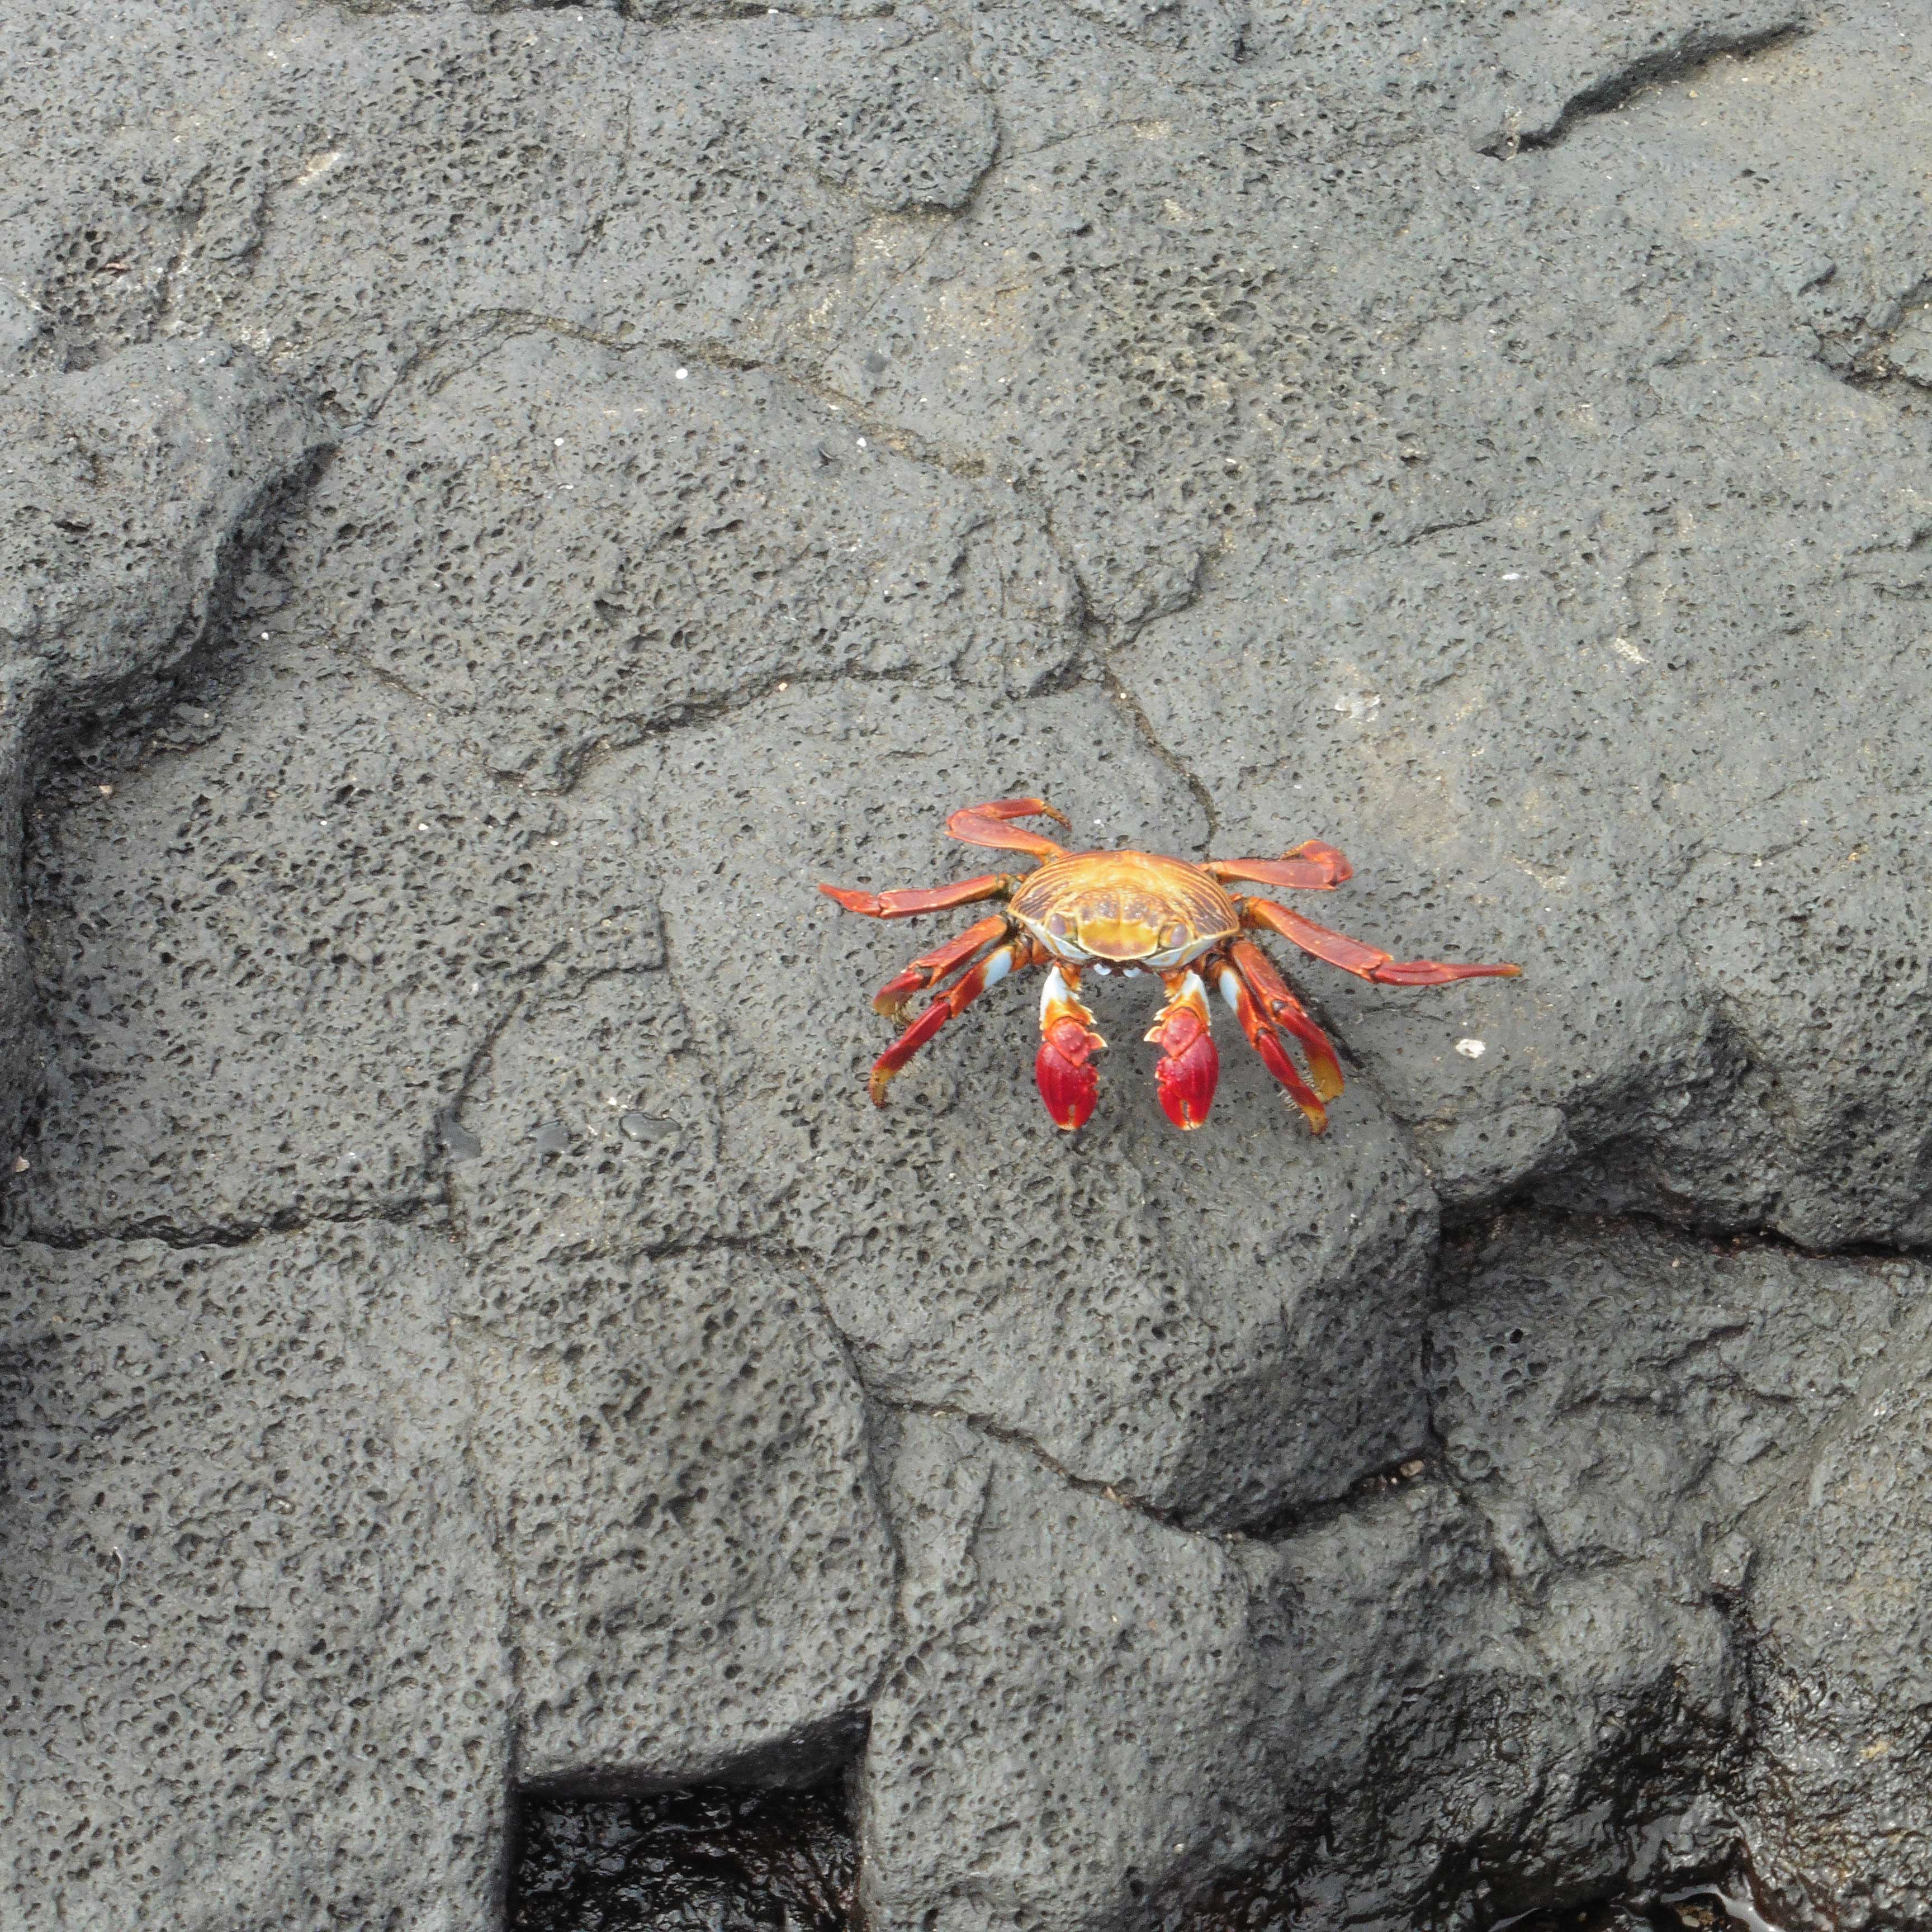 Ecuador - The Galapagos - Crabs